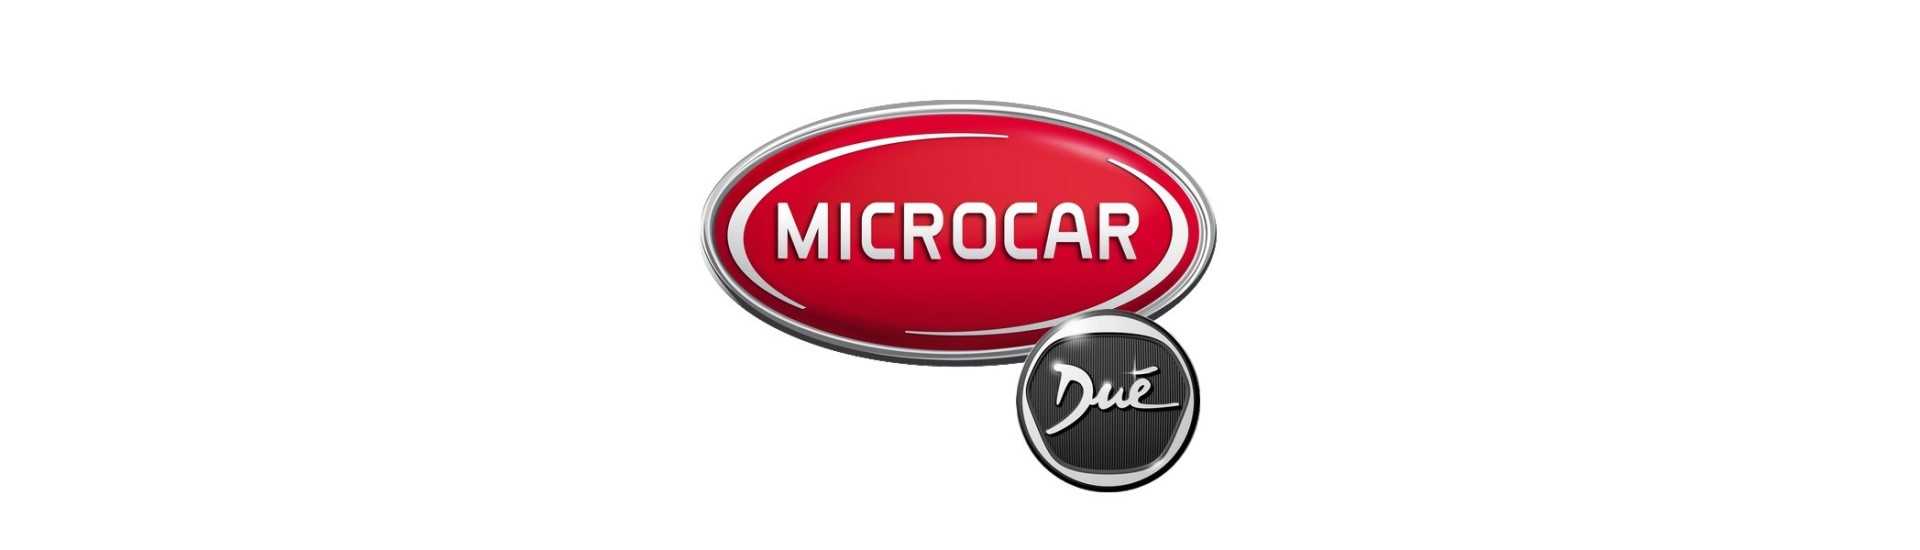 Cable de calefacción a los mejores precios coche sin permiso Microcar Dué